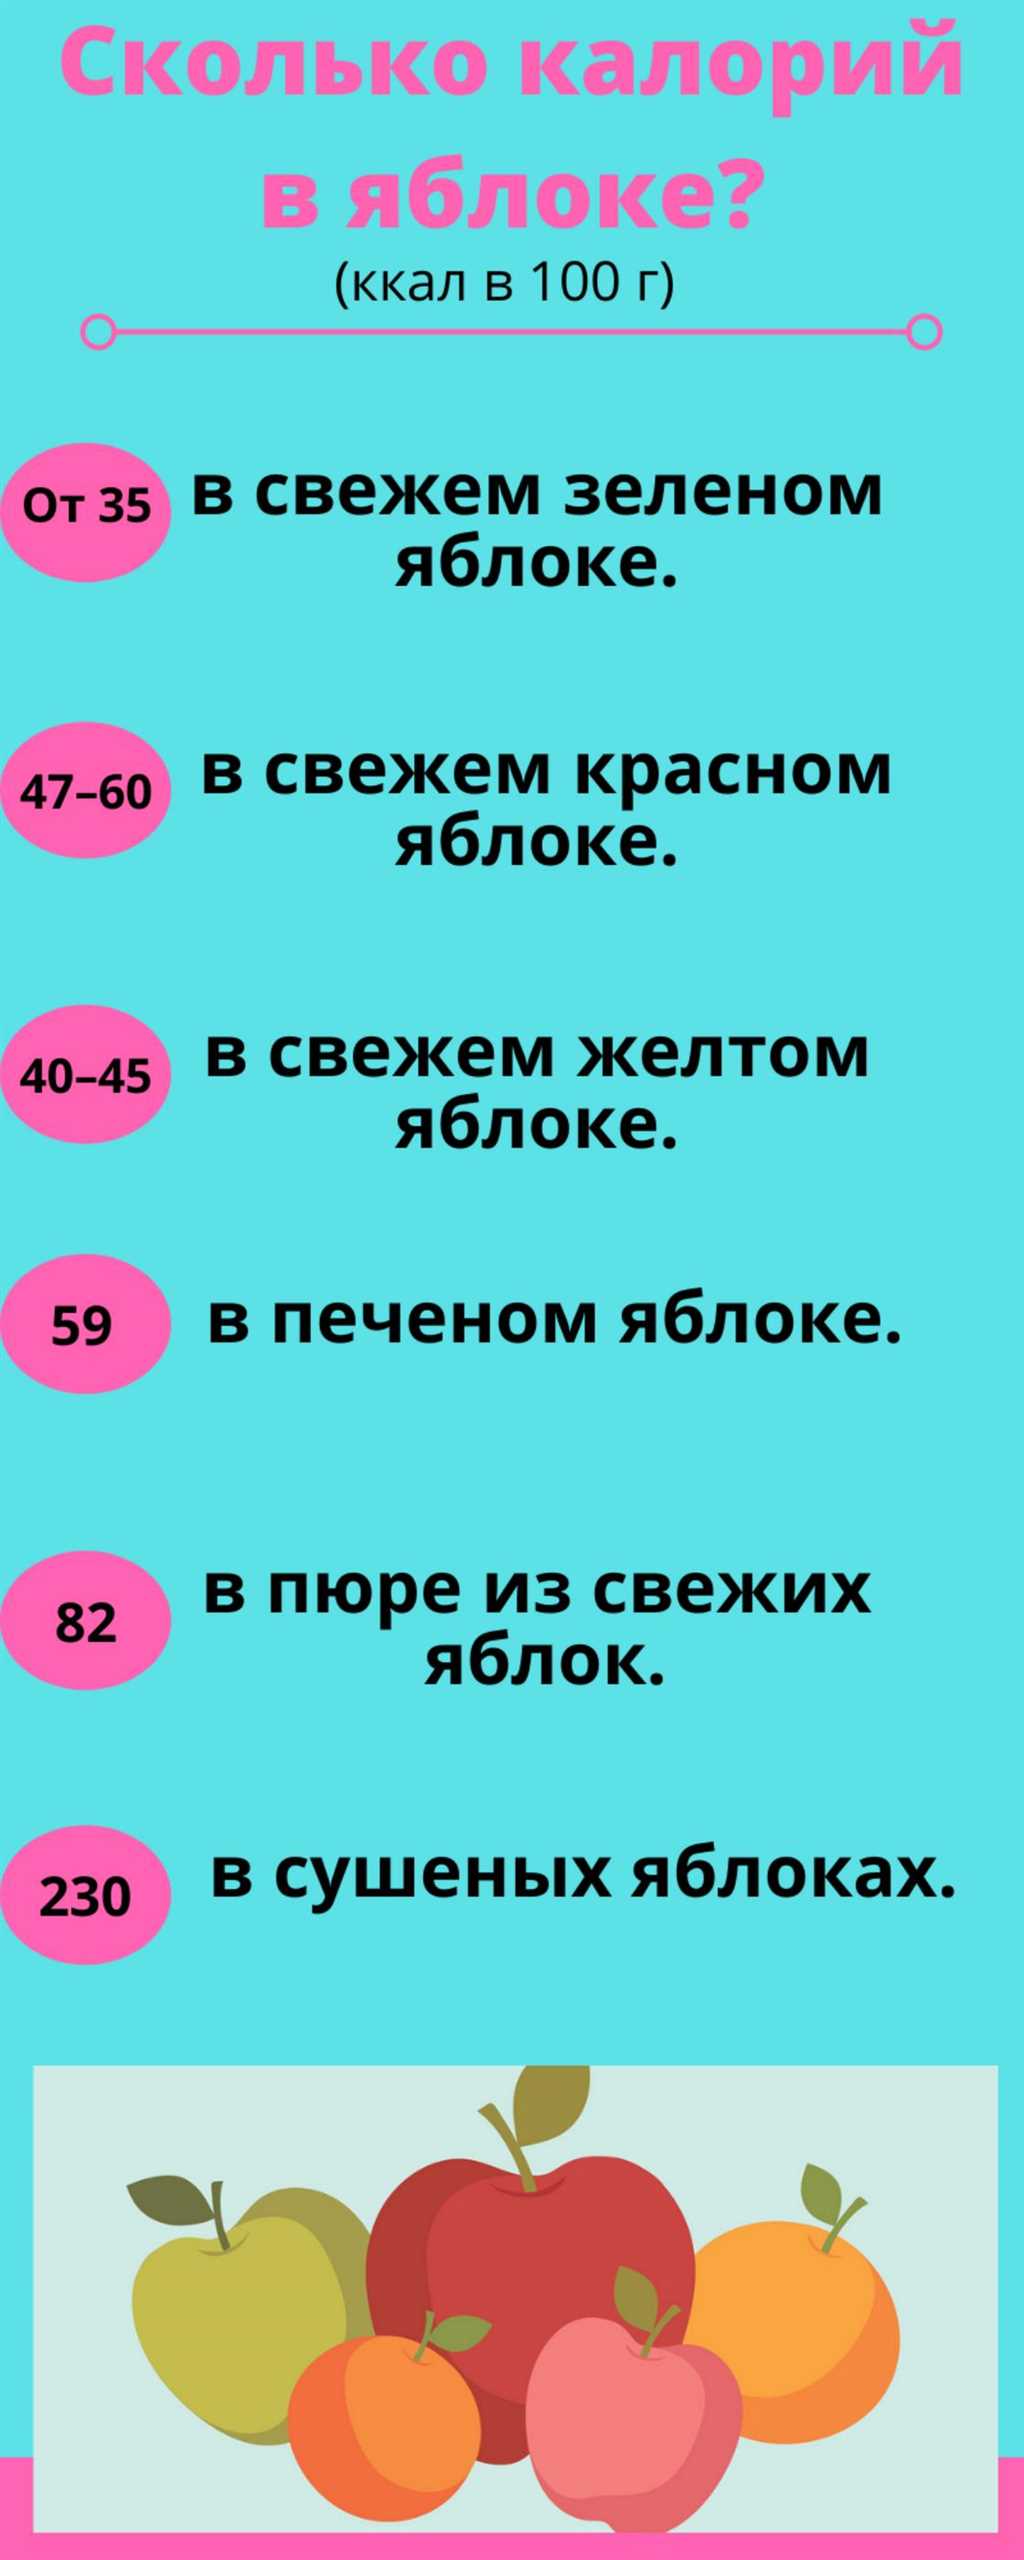 3. Симиренко